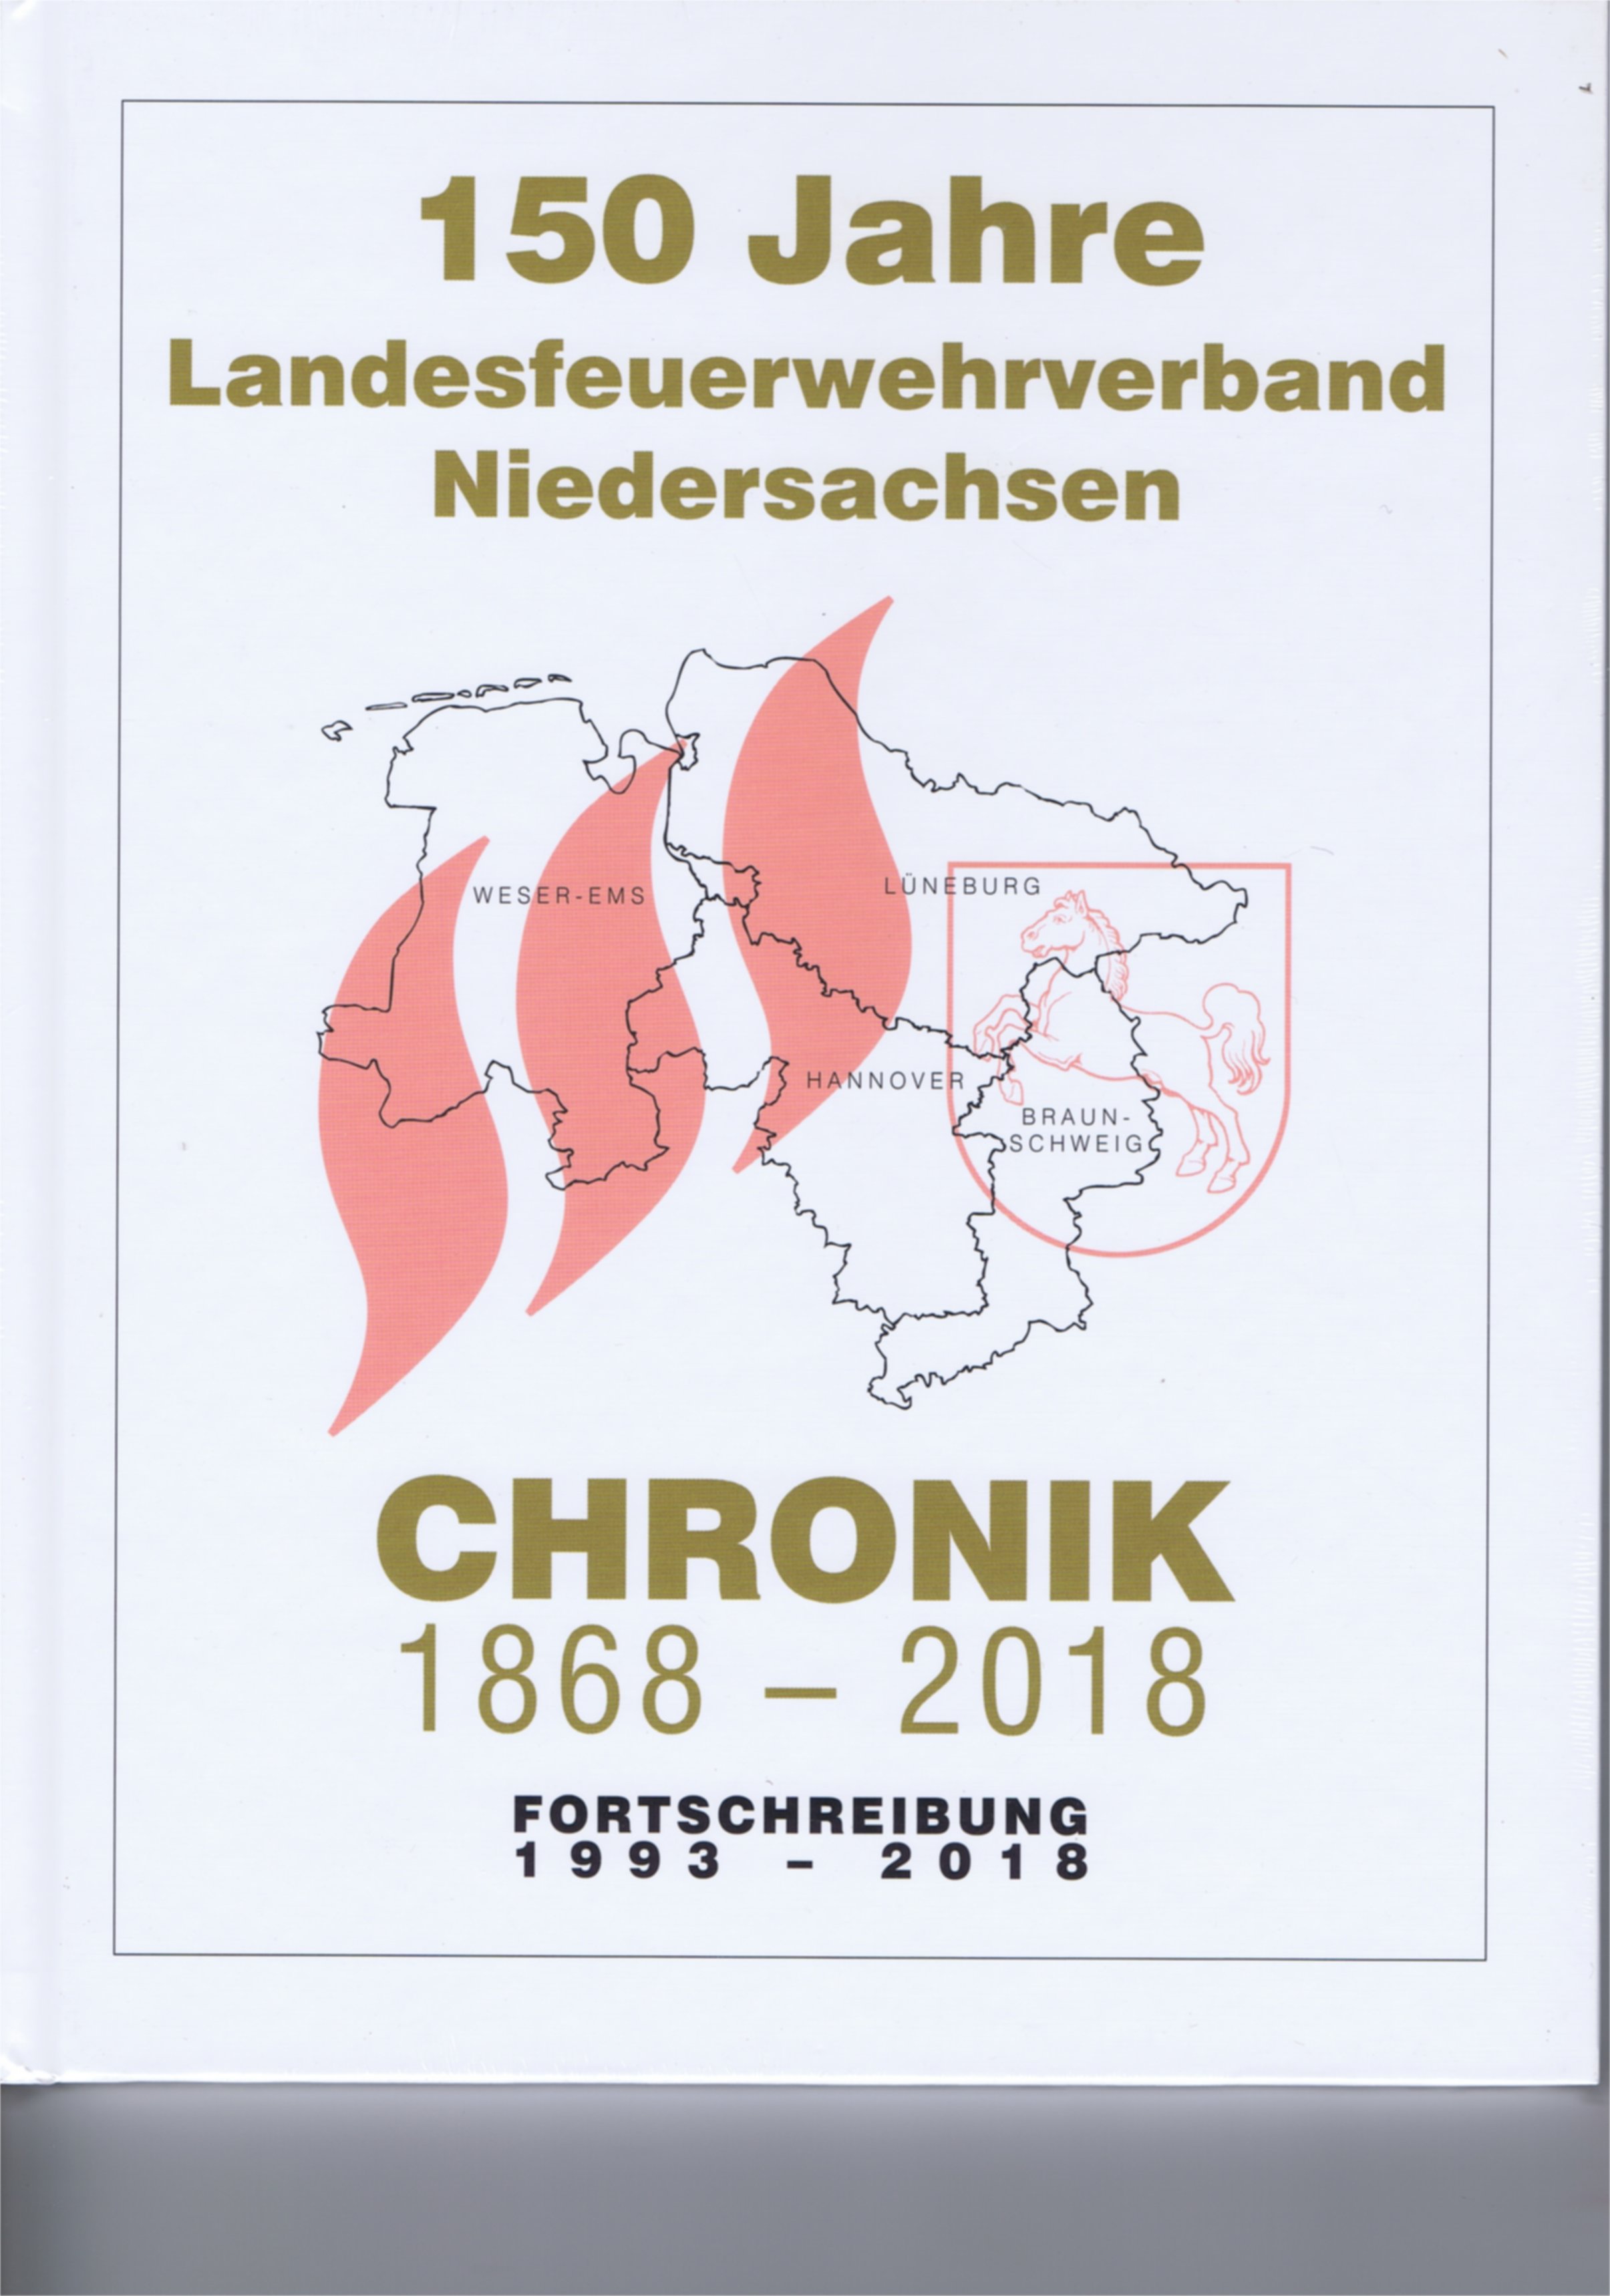 Festschrift LFV Niedersachsen (Feuerwehrmuseum Grethen CC BY-NC-SA)